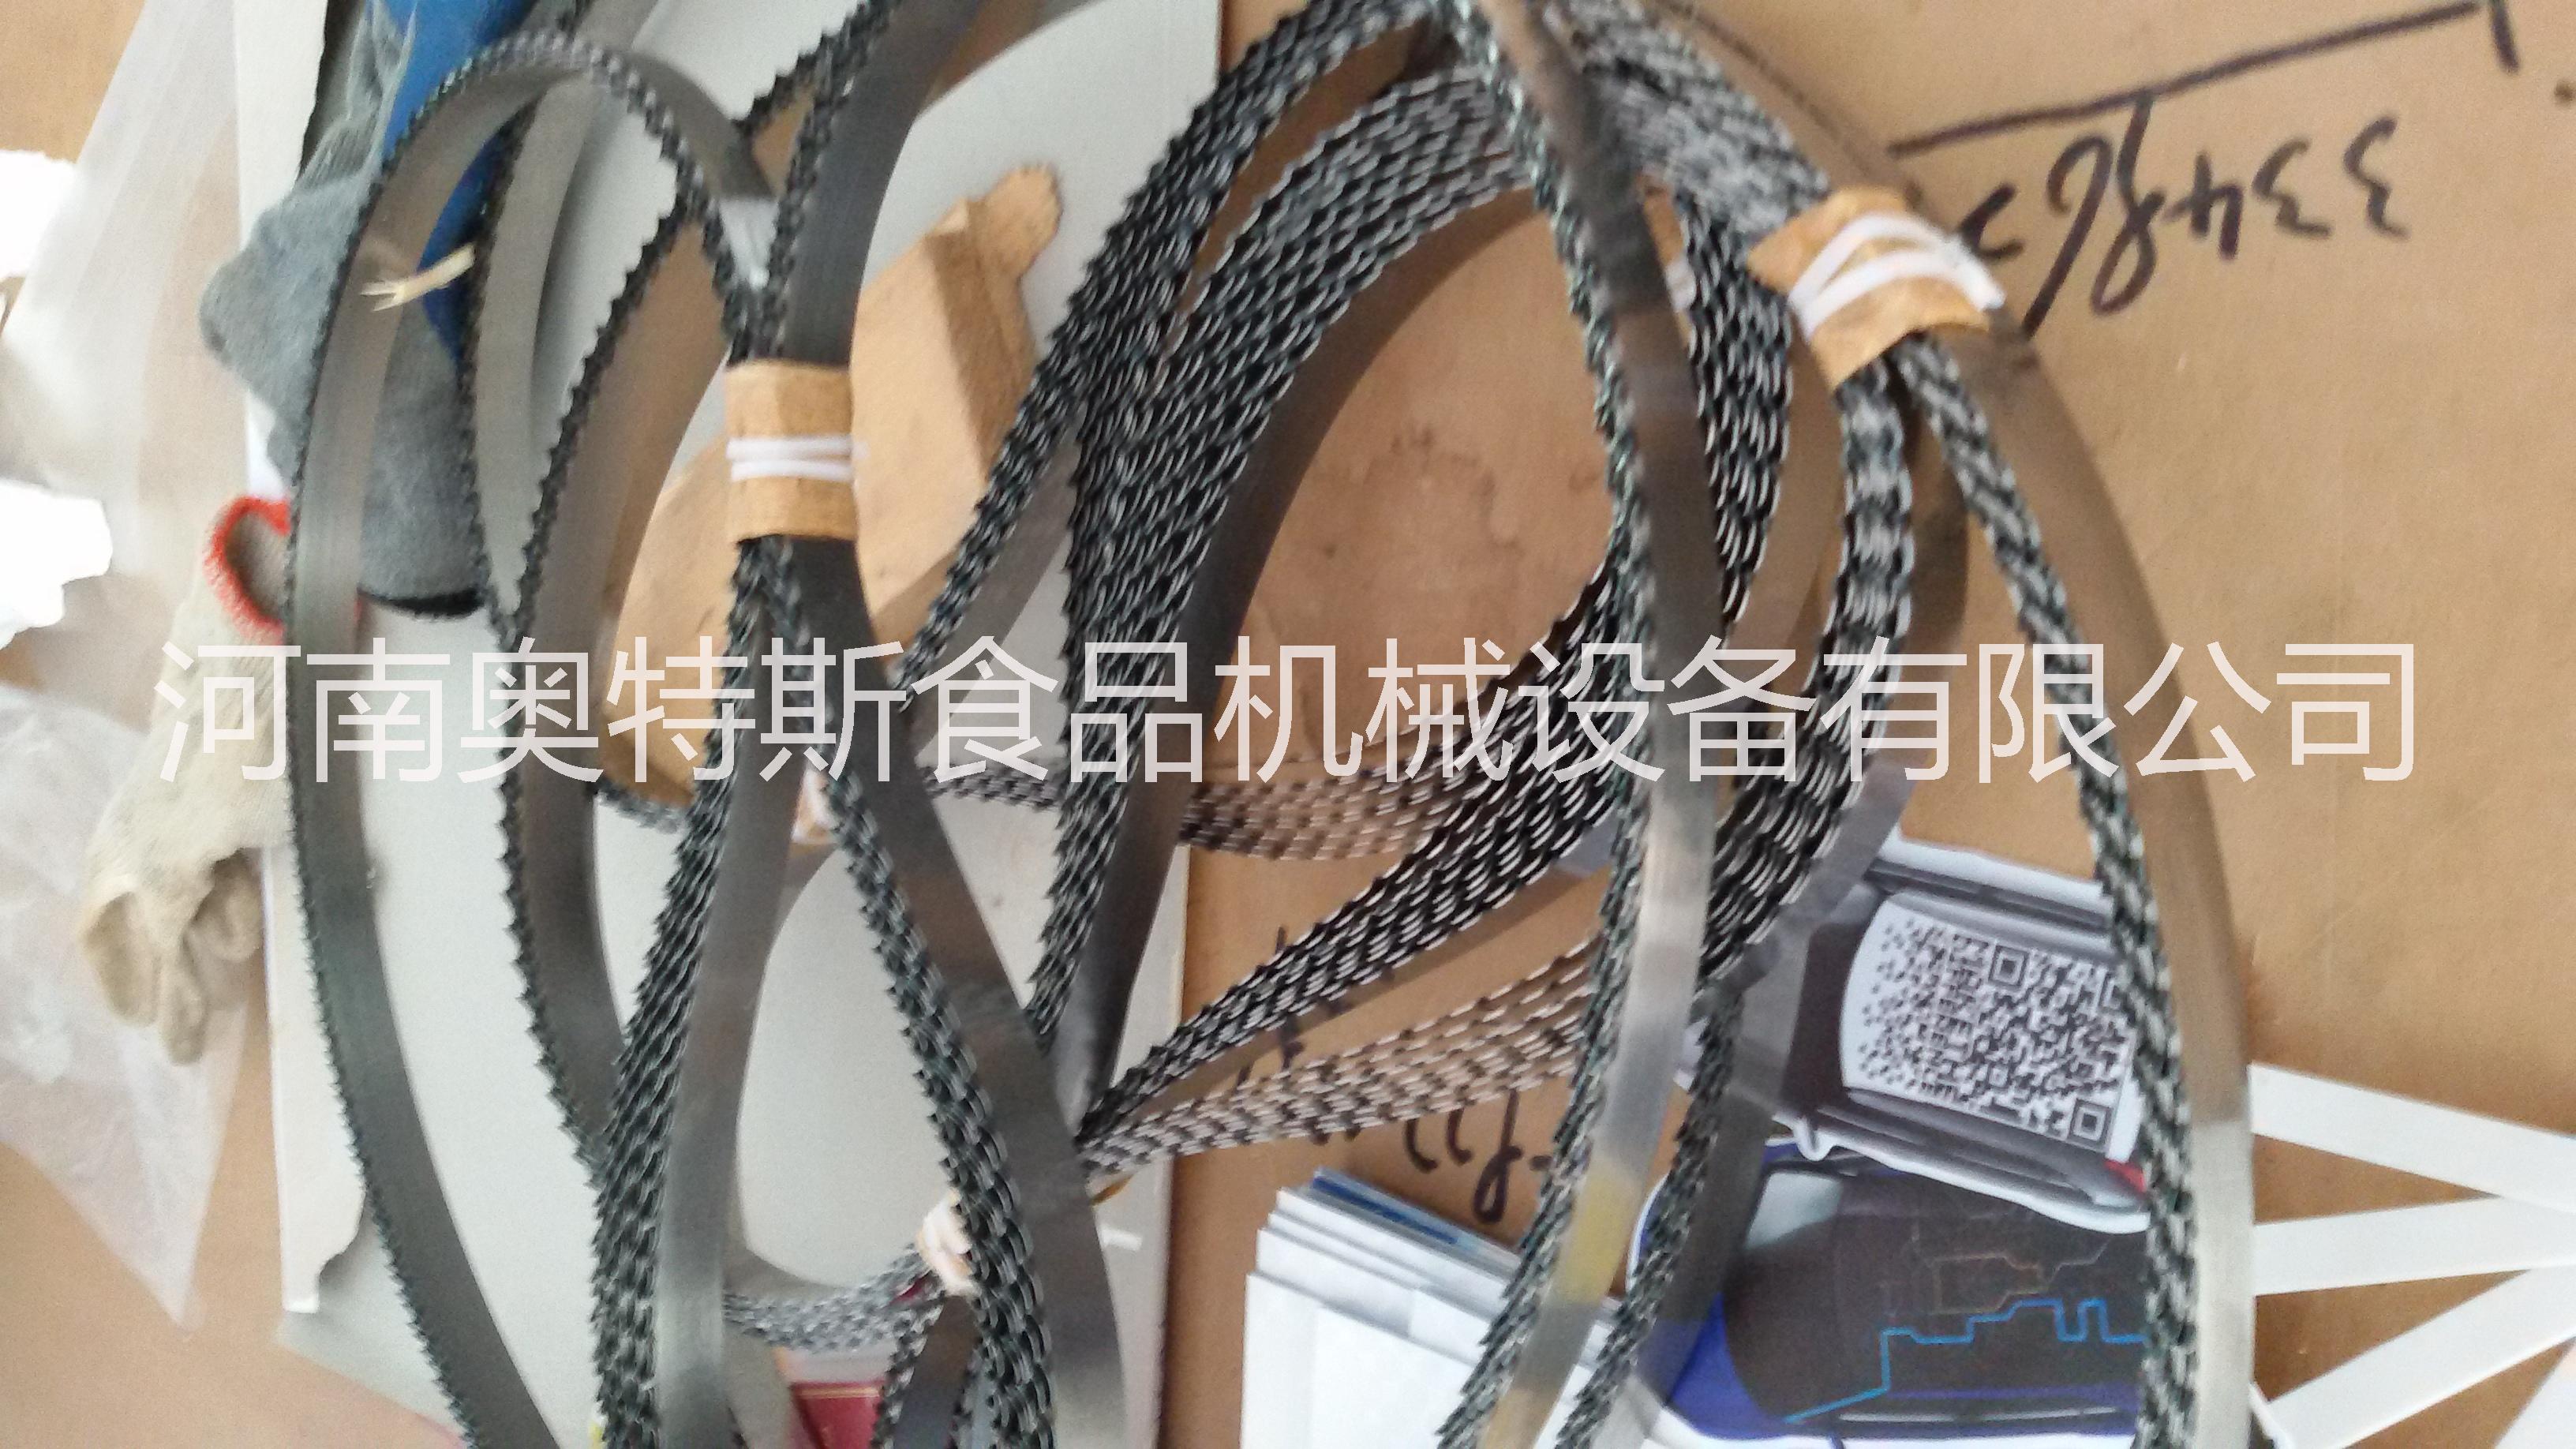 锯骨机锯条郑州厂家环形切骨机锯带质量好耐用图片